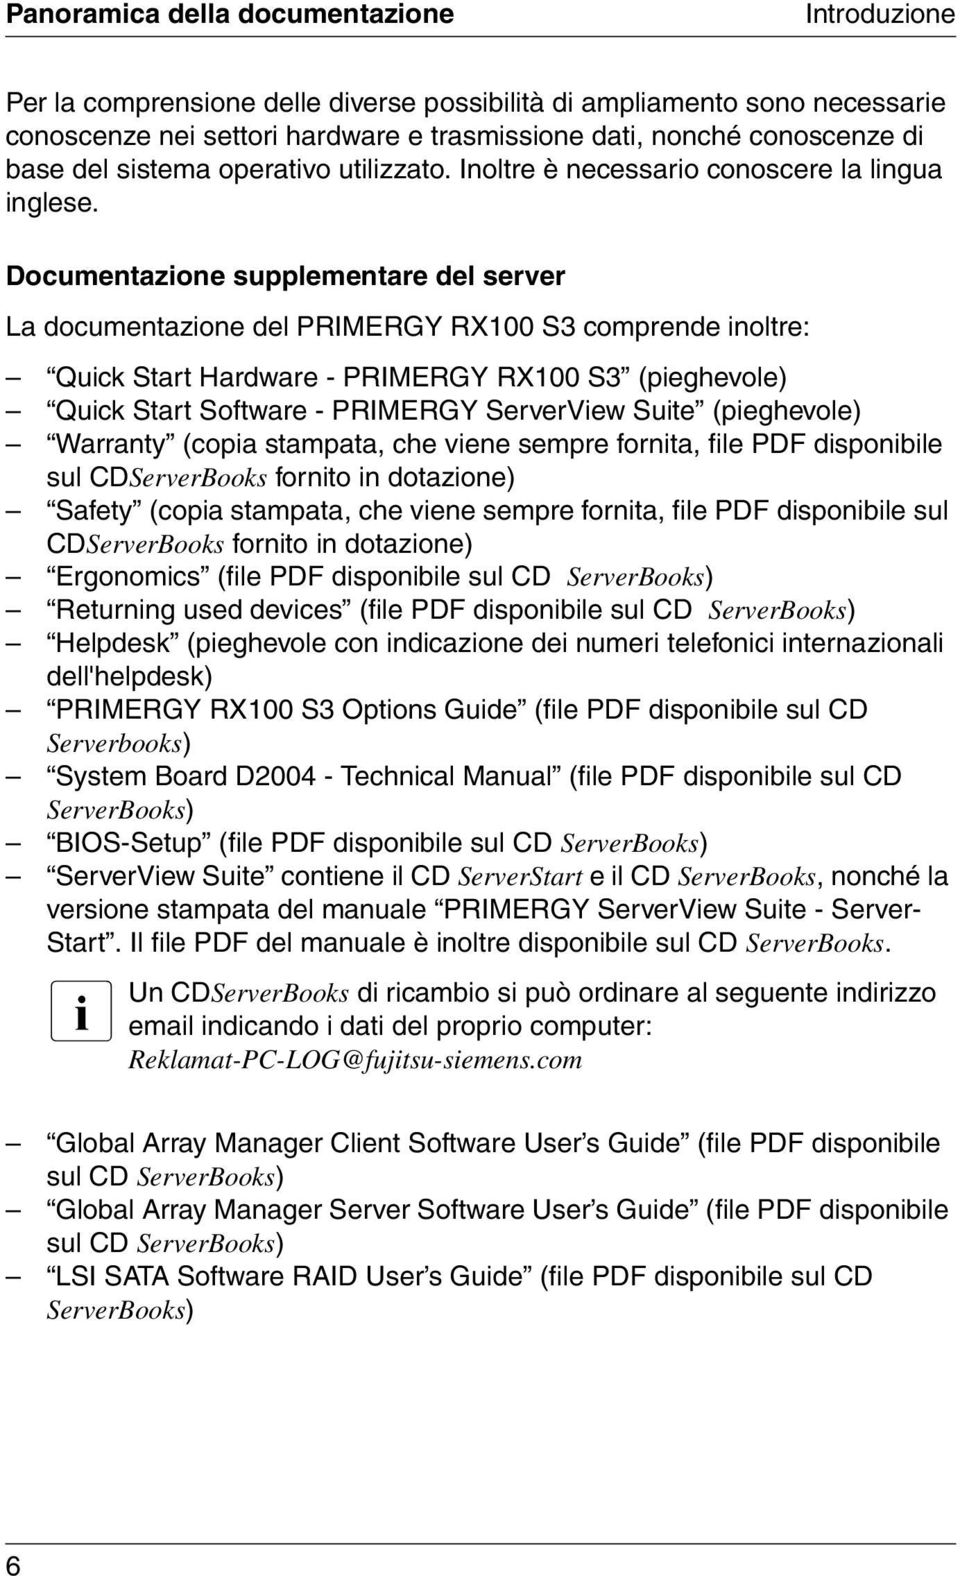 Documentazione supplementare del server La documentazione del PRIMERGY RX100 S3 comprende inoltre: Quick Start Hardware - PRIMERGY RX100 S3 (pieghevole) Quick Start Software - PRIMERGY ServerView